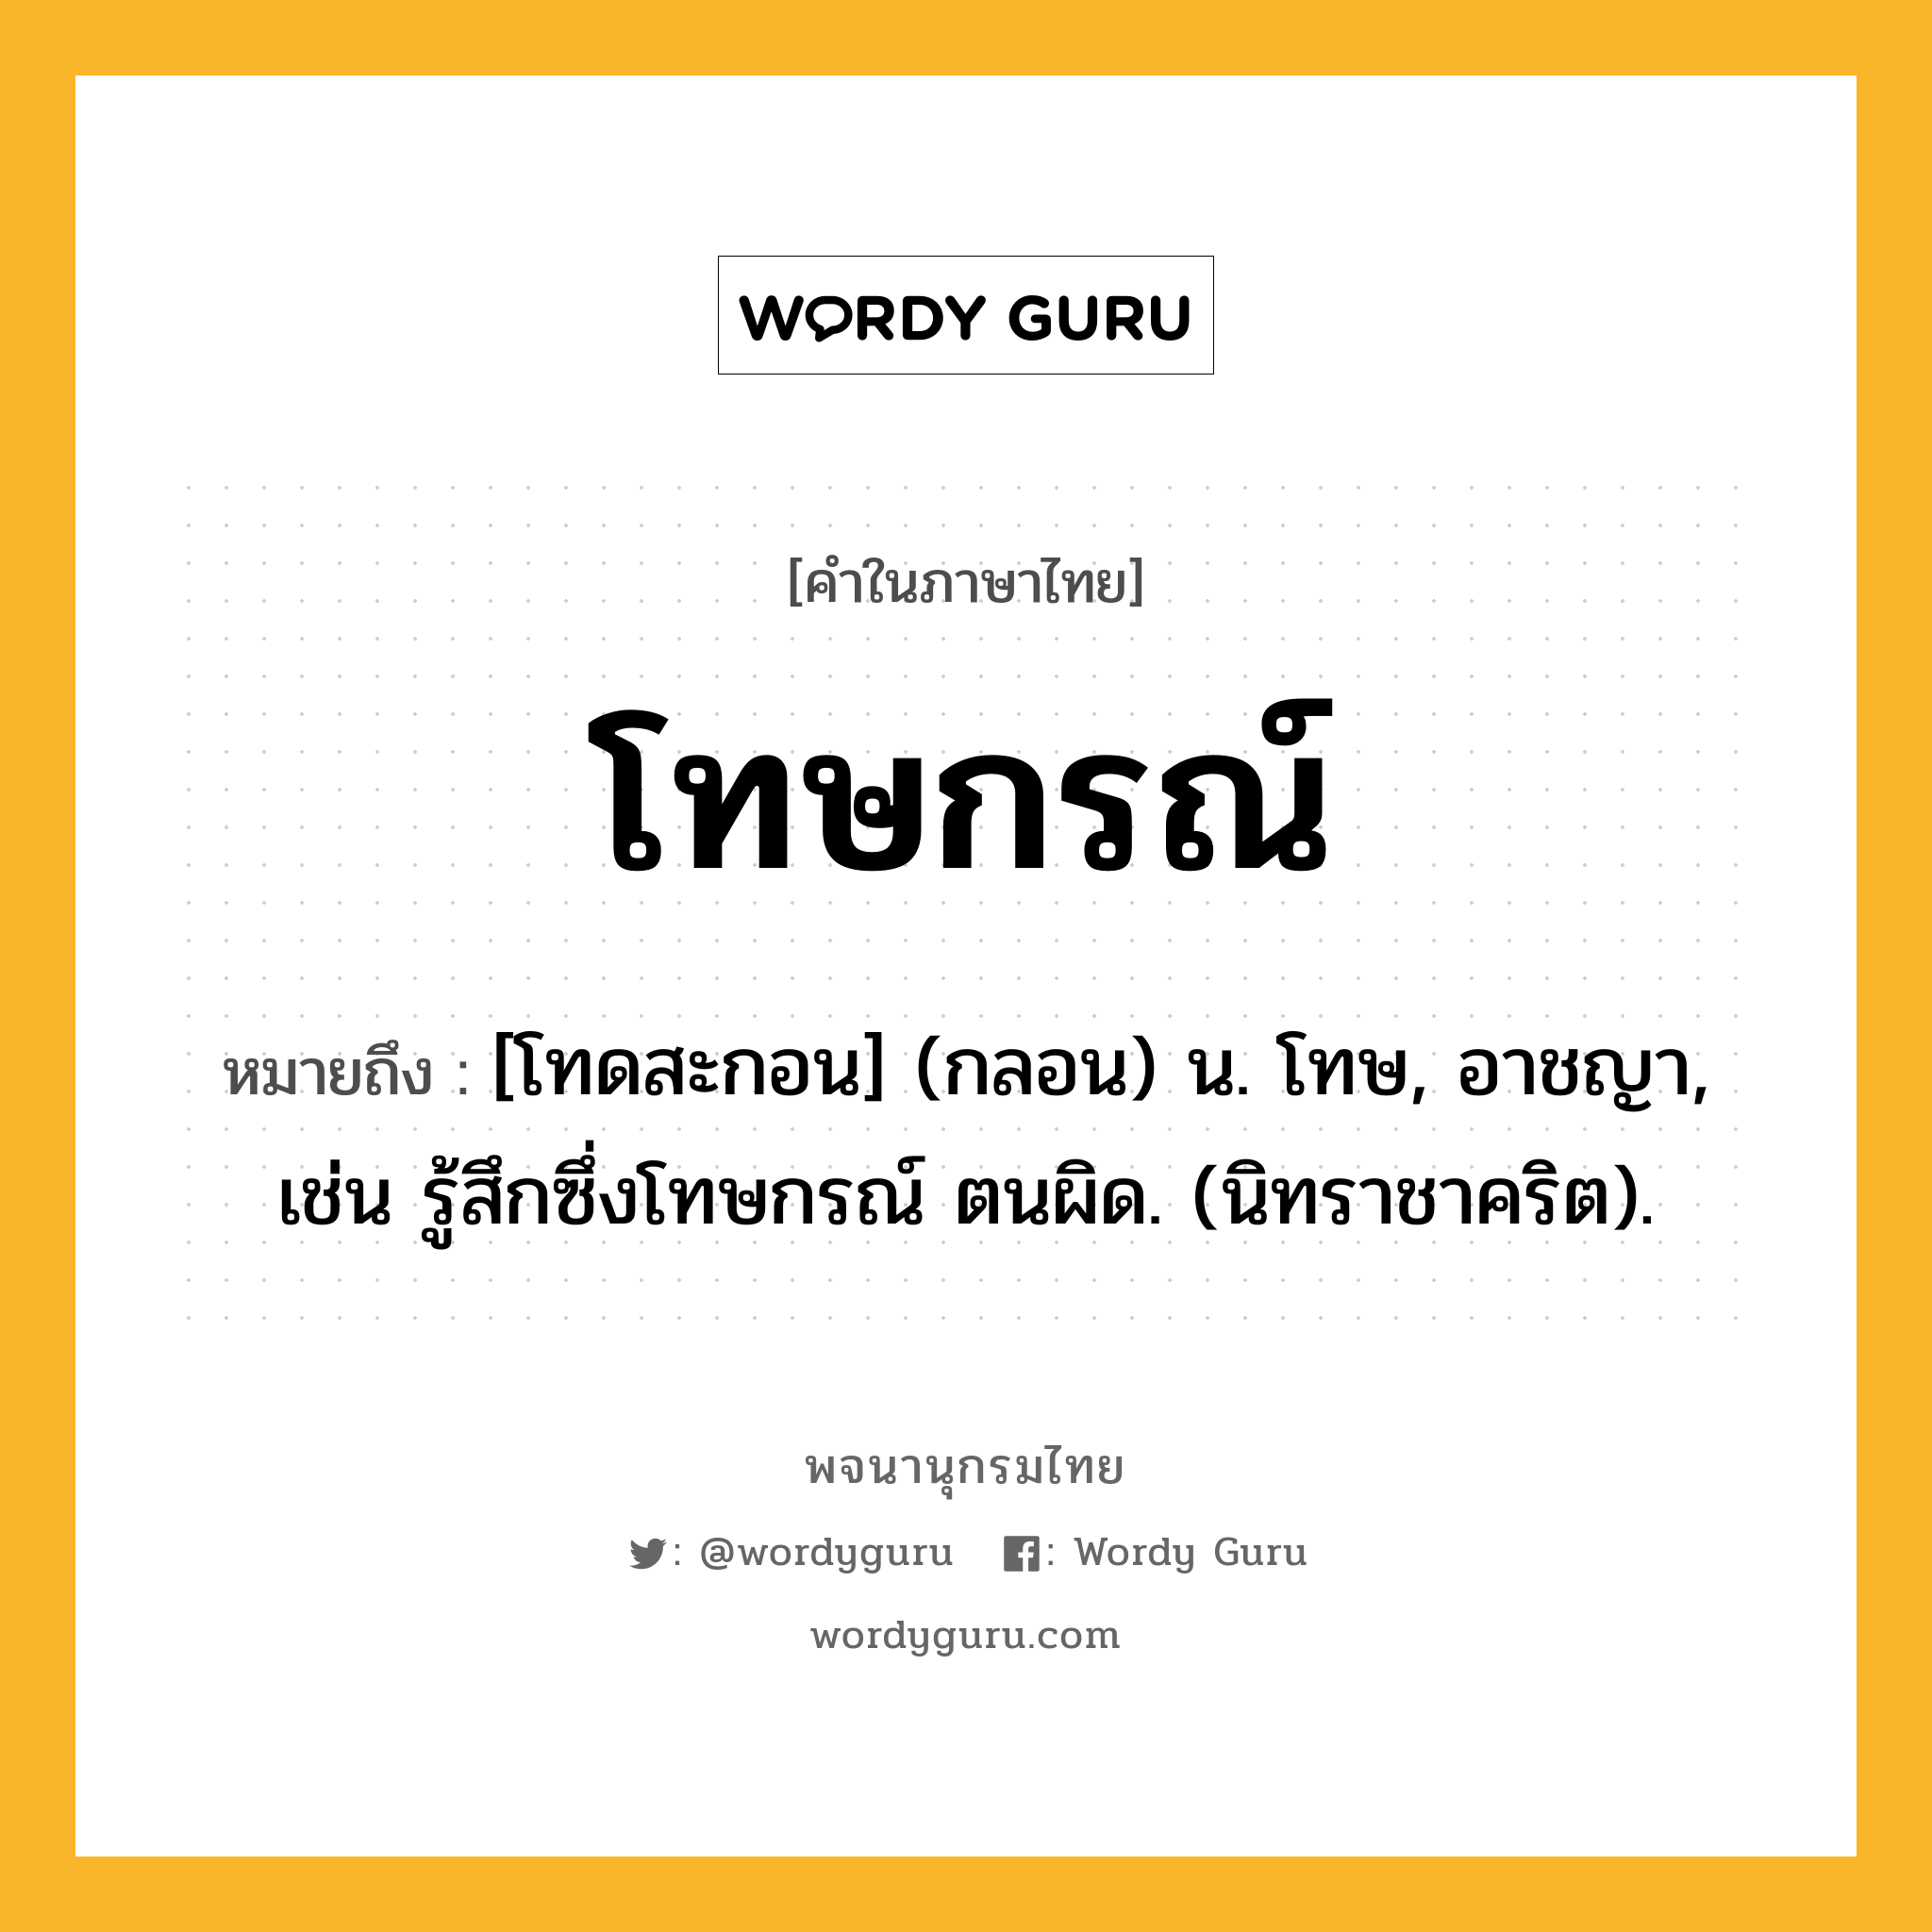 โทษกรณ์ หมายถึงอะไร?, คำในภาษาไทย โทษกรณ์ หมายถึง [โทดสะกอน] (กลอน) น. โทษ, อาชญา, เช่น รู้สึกซึ่งโทษกรณ์ ตนผิด. (นิทราชาคริต).